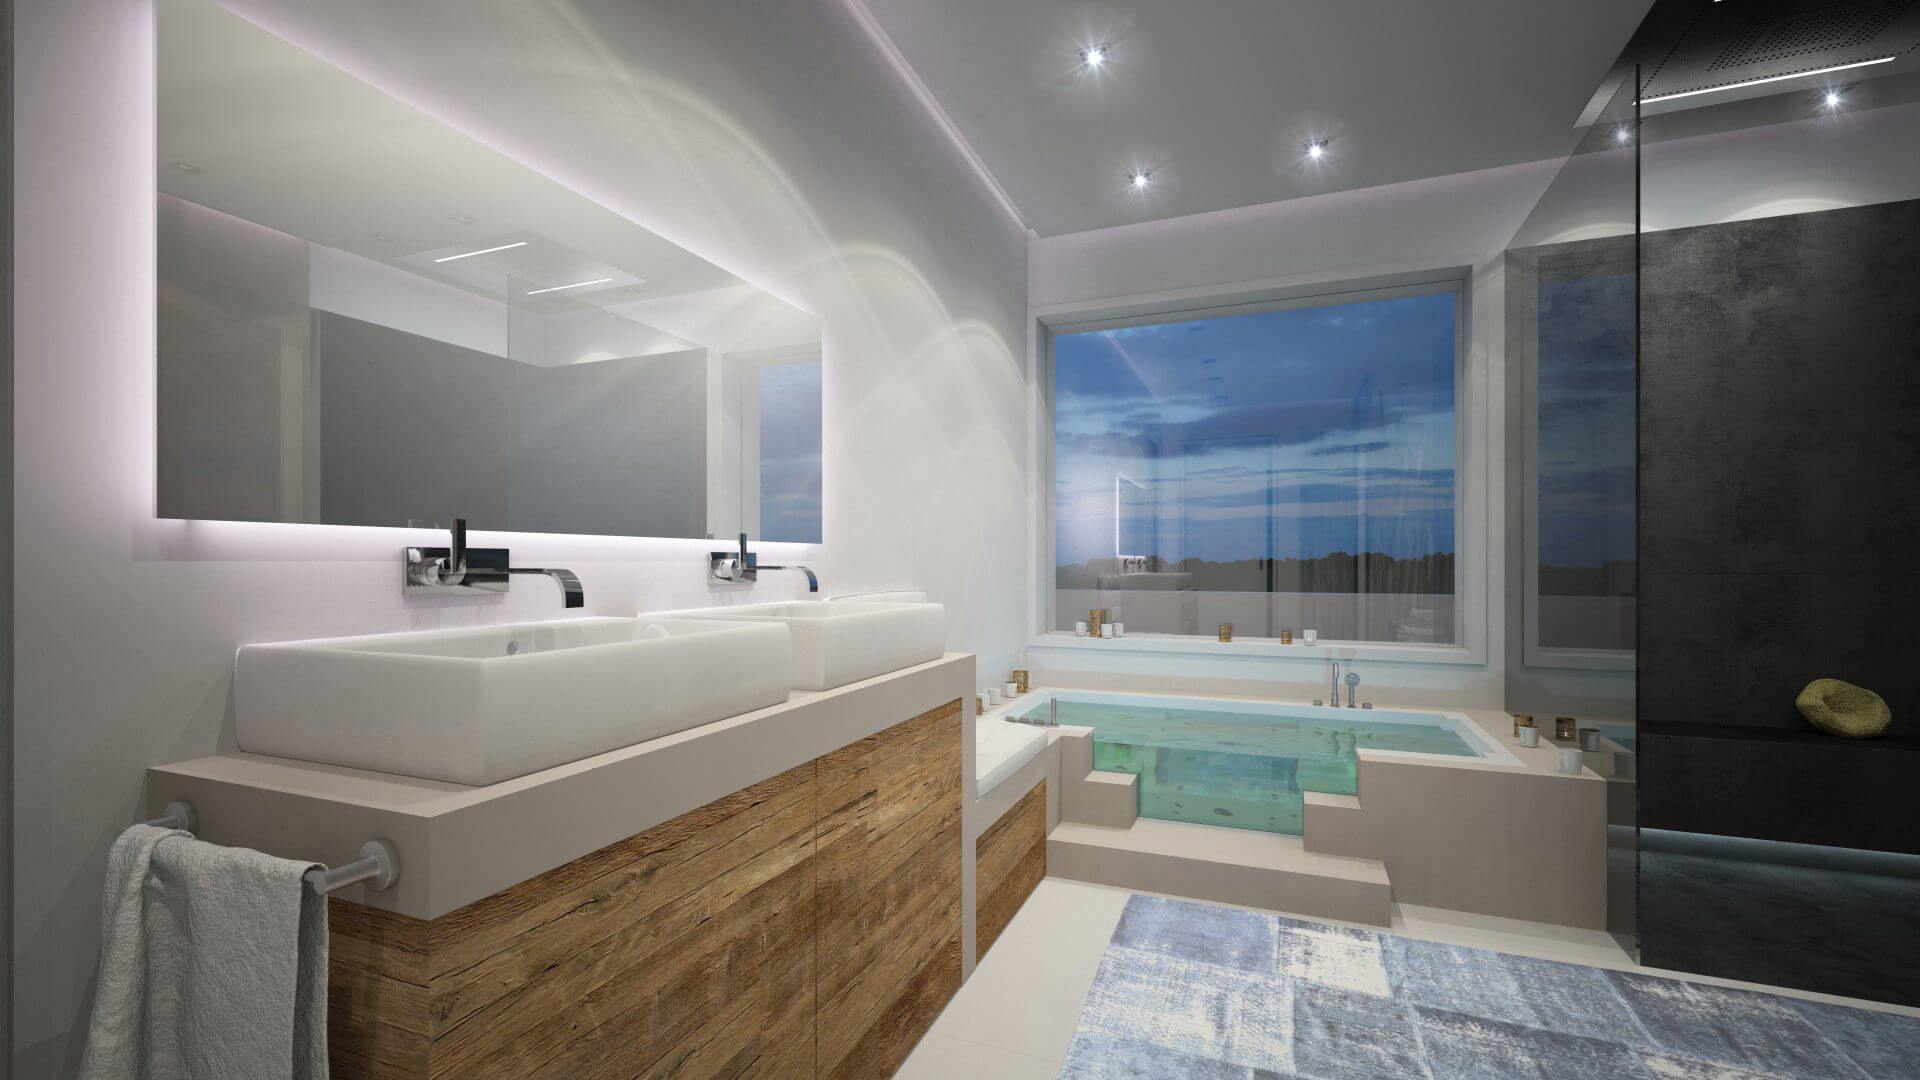 Modernes Bad mit hölzernem Waschtisch und Designerwanne vor wandfüllendem Fenster